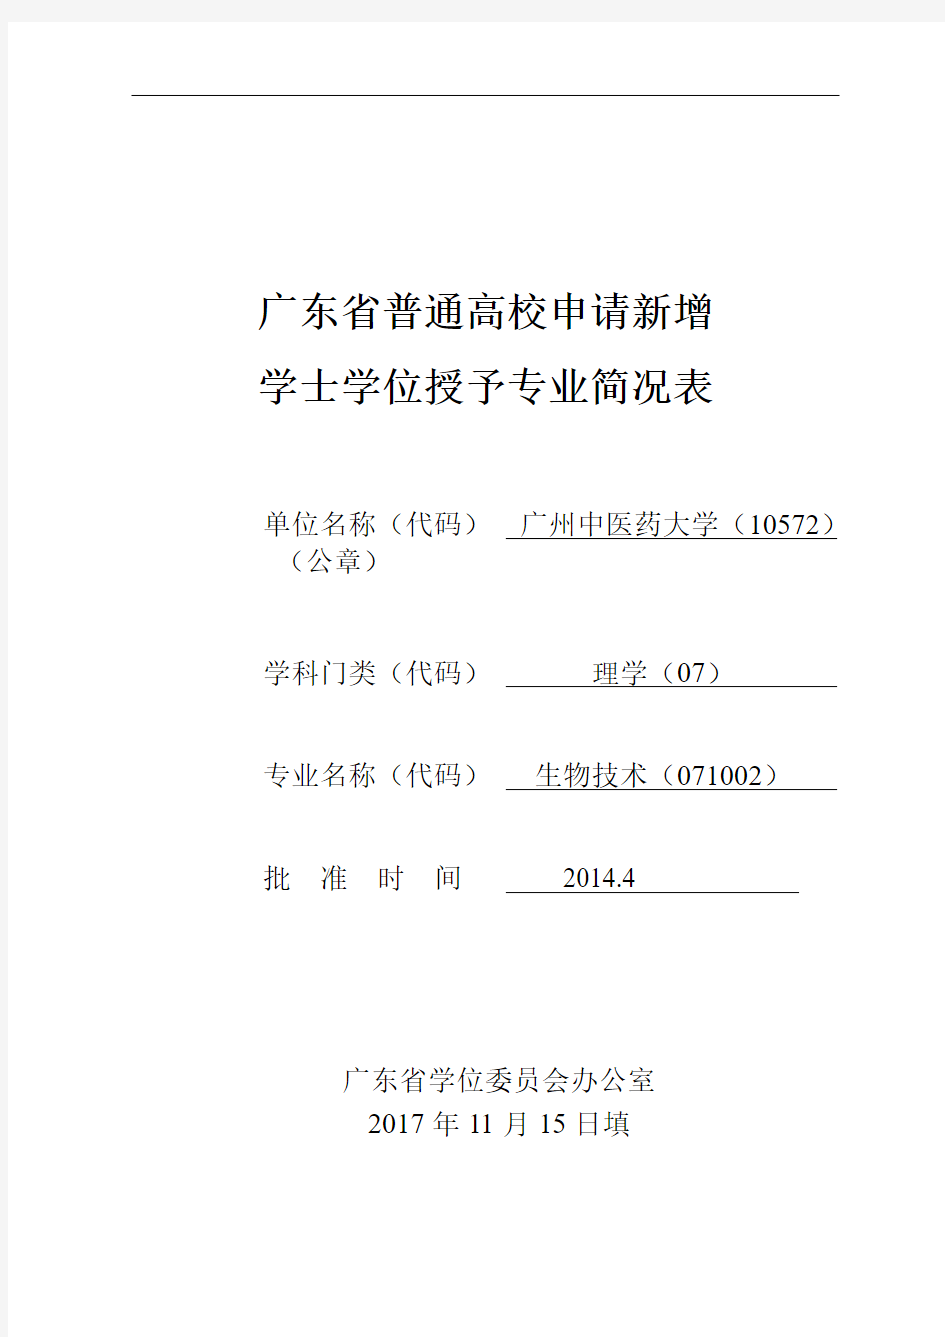 1广东省普通高校申请新增学士学位专业简况表(生物技术专业)